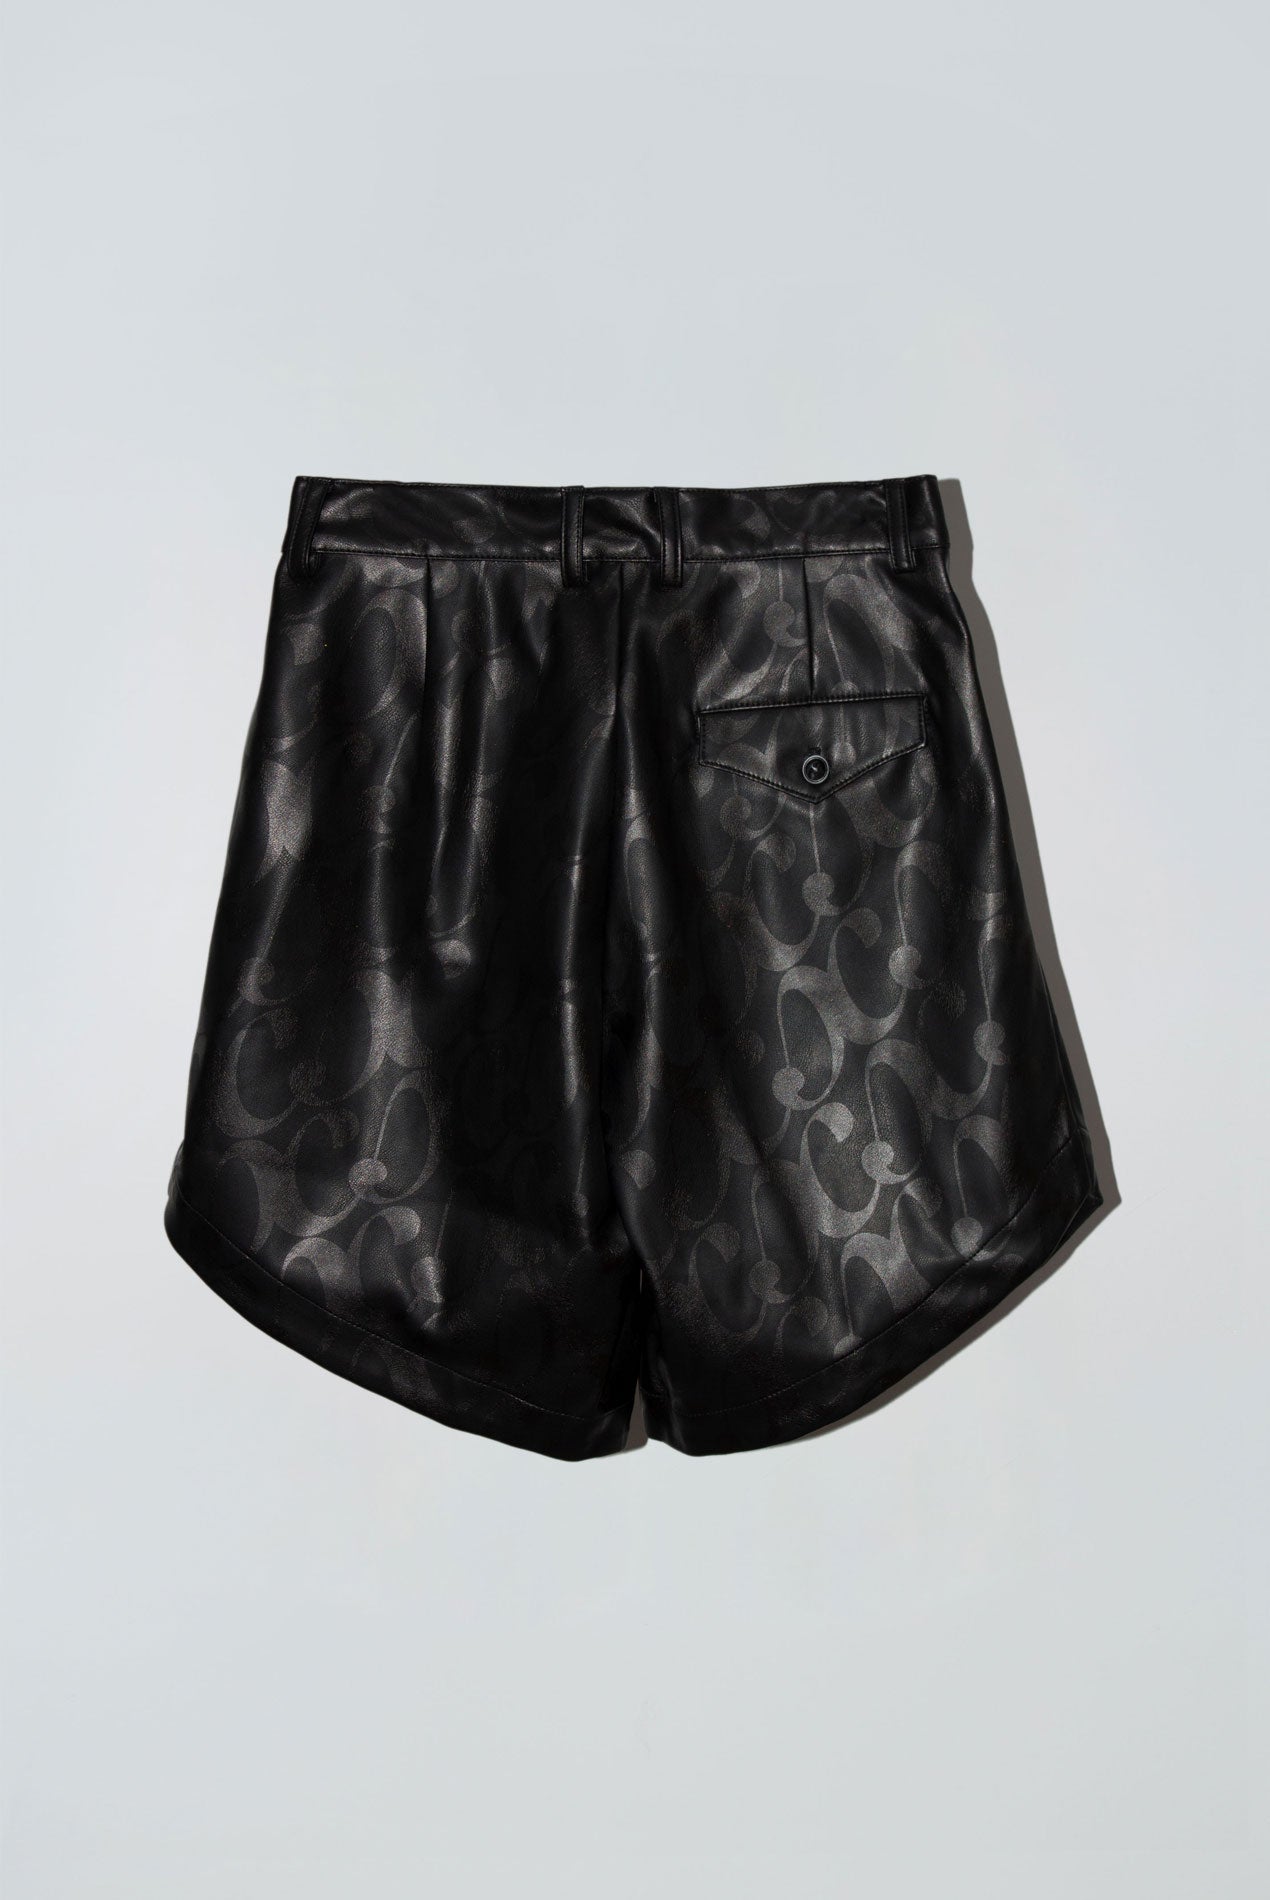 Blossom Shorts in Spell Print Black